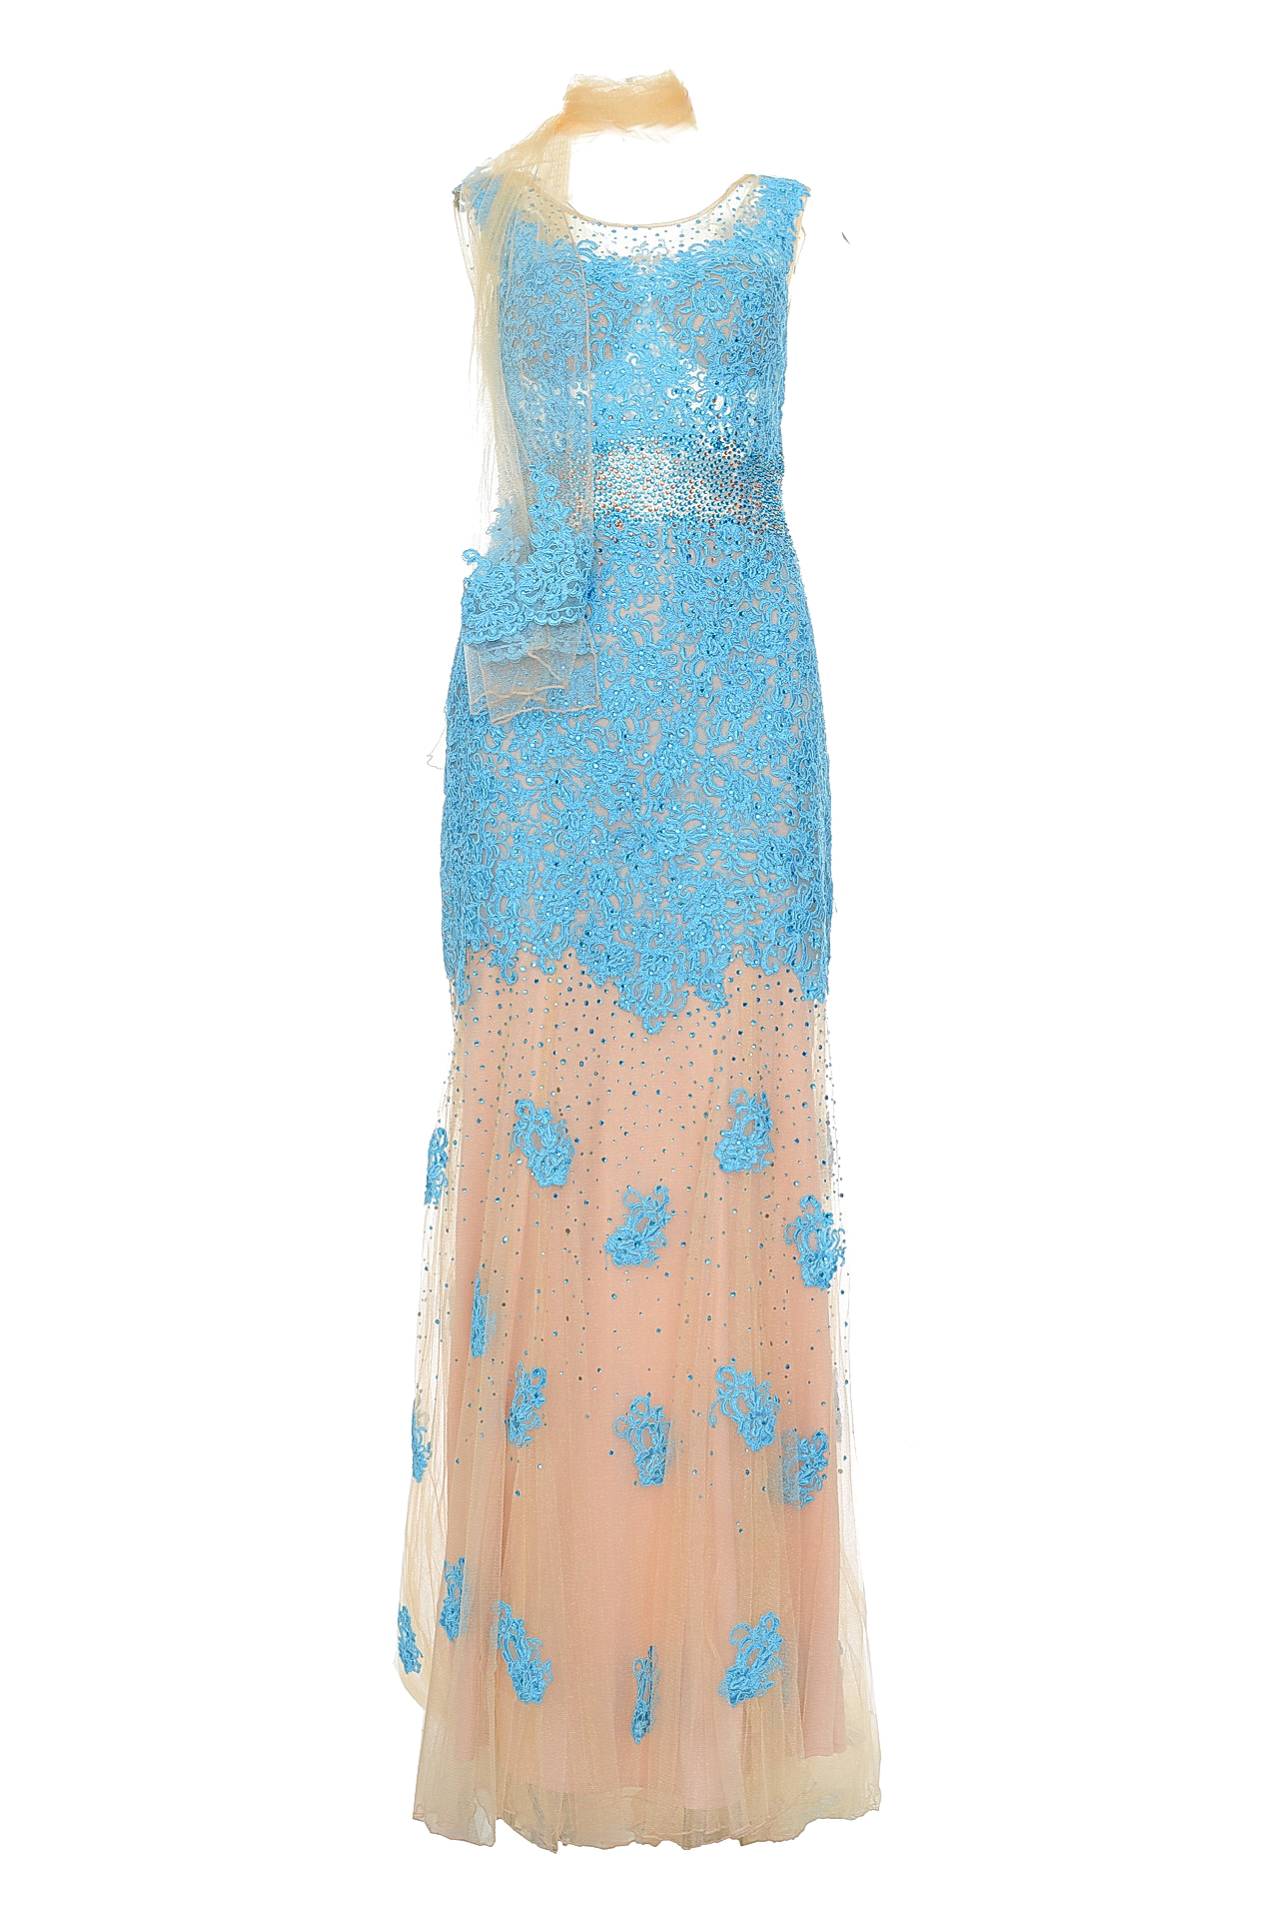 Одежда женская Платье MIKAEL (32113/15.2). Купить за 14750 руб.